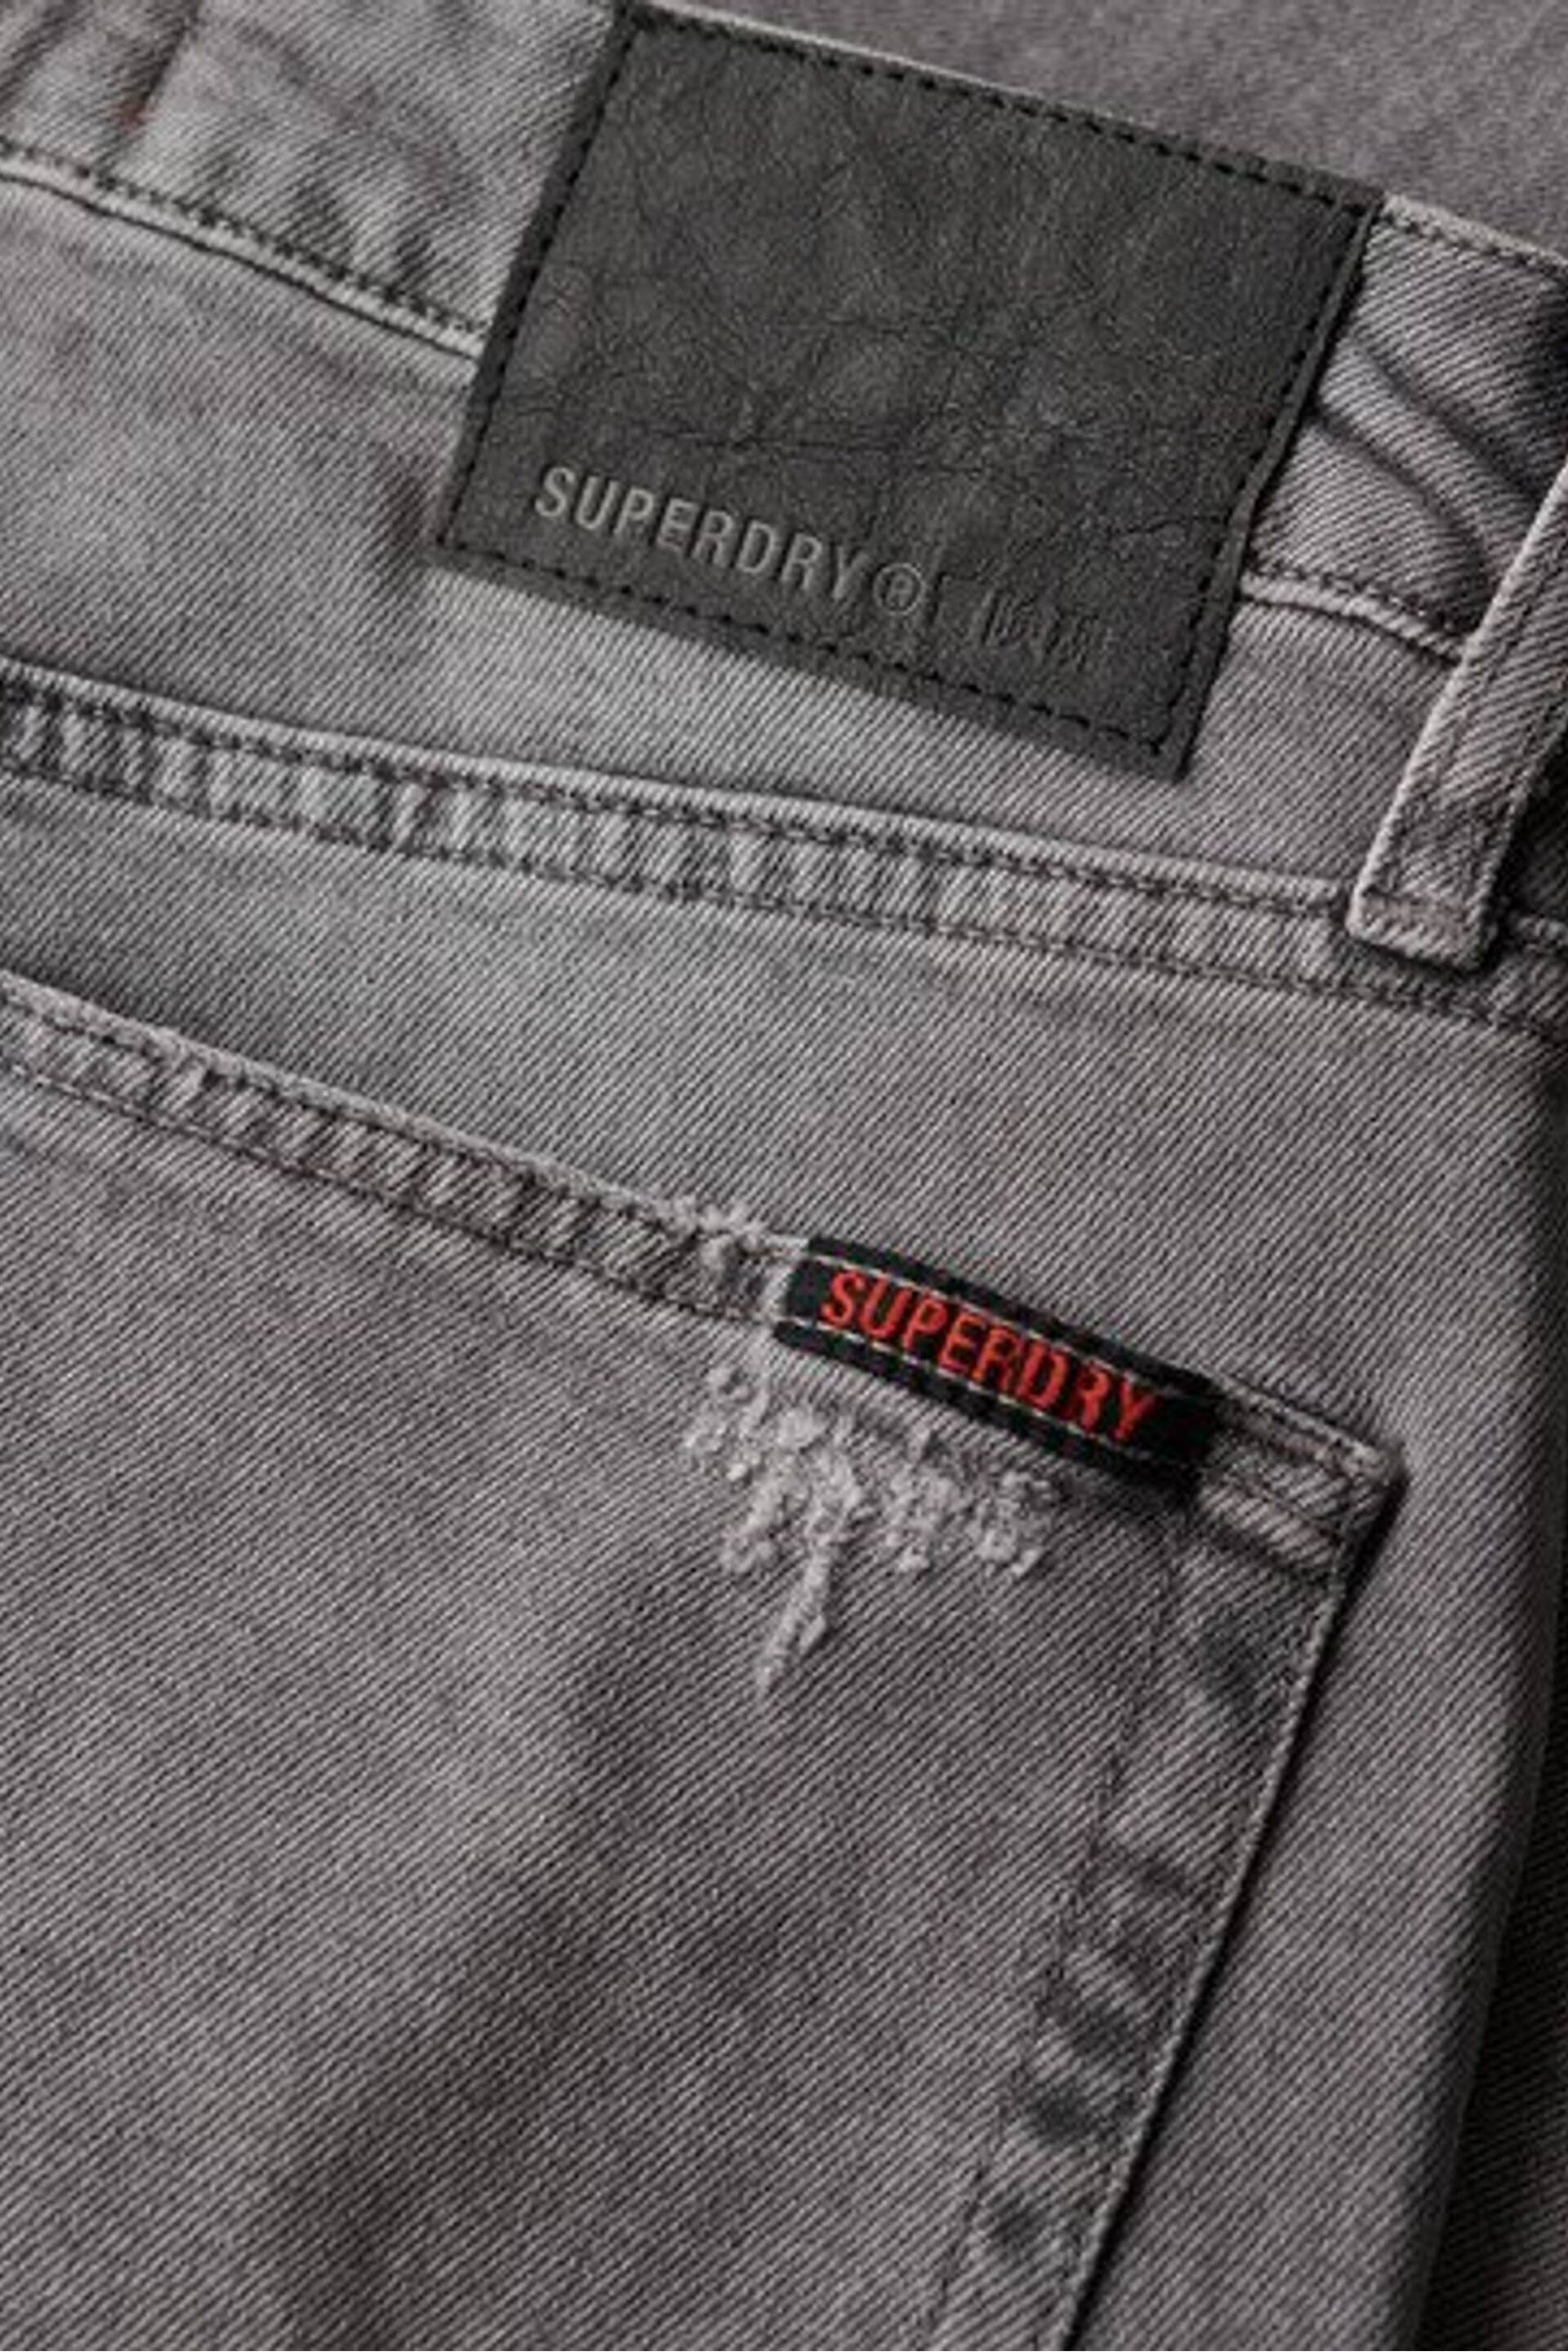 Superdry Grey Vintage Slim Straight Jeans - Image 6 of 6